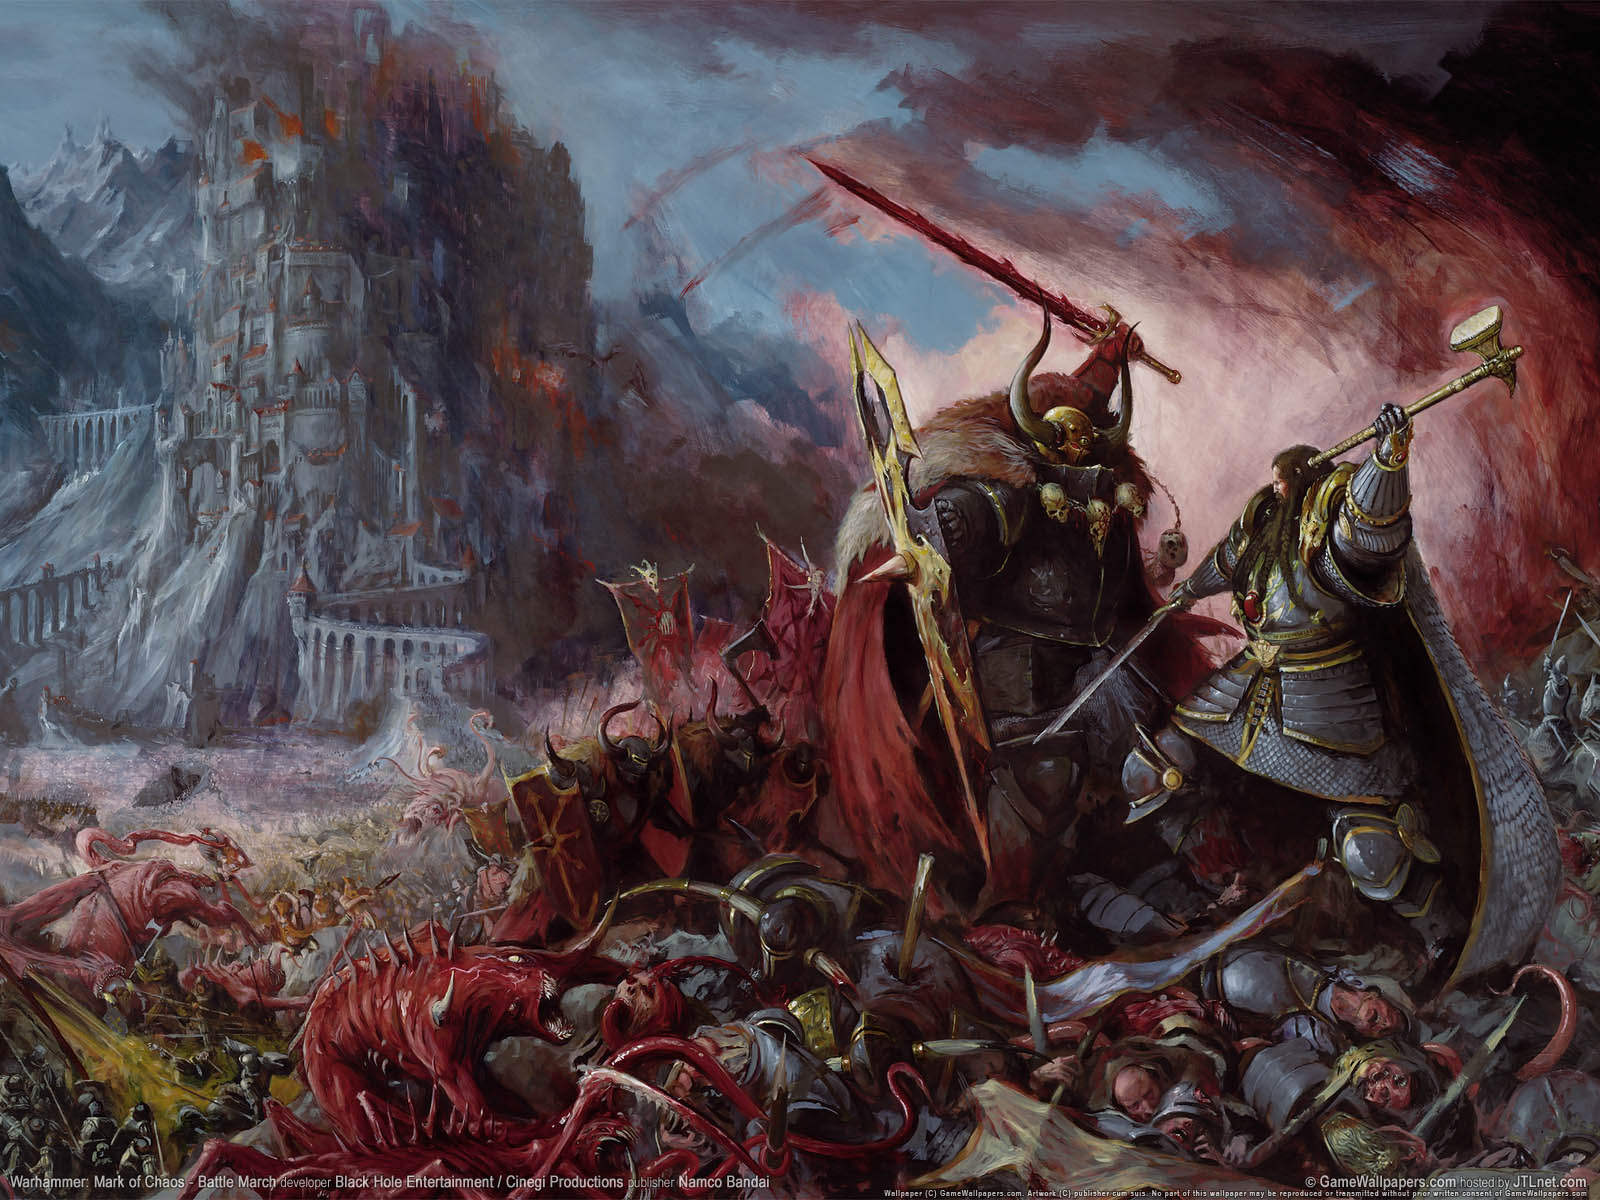 Warhammer%3A Mark of Chaos - Battle March wallpaper 02 1600x1200